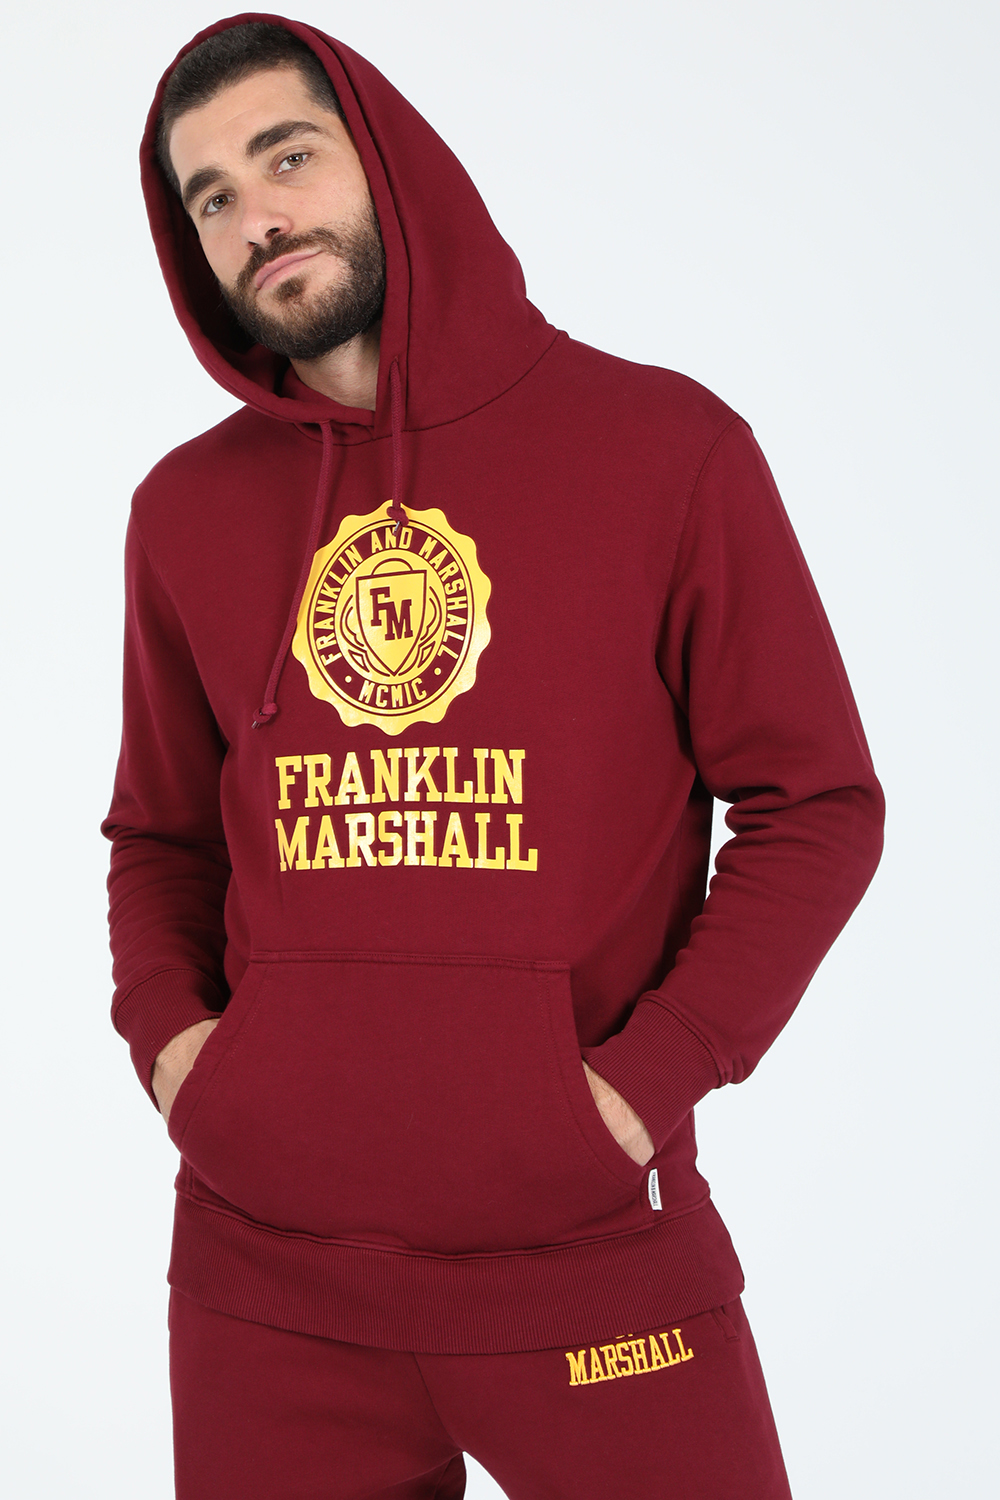 Ανδρικά/Ρούχα/Φούτερ/Μπλούζες FRANKLIN & MARSHALL - Ανδρική φούτερ μπλούζα FRANKLIN & MARSHALL BRUSHED μπορντό